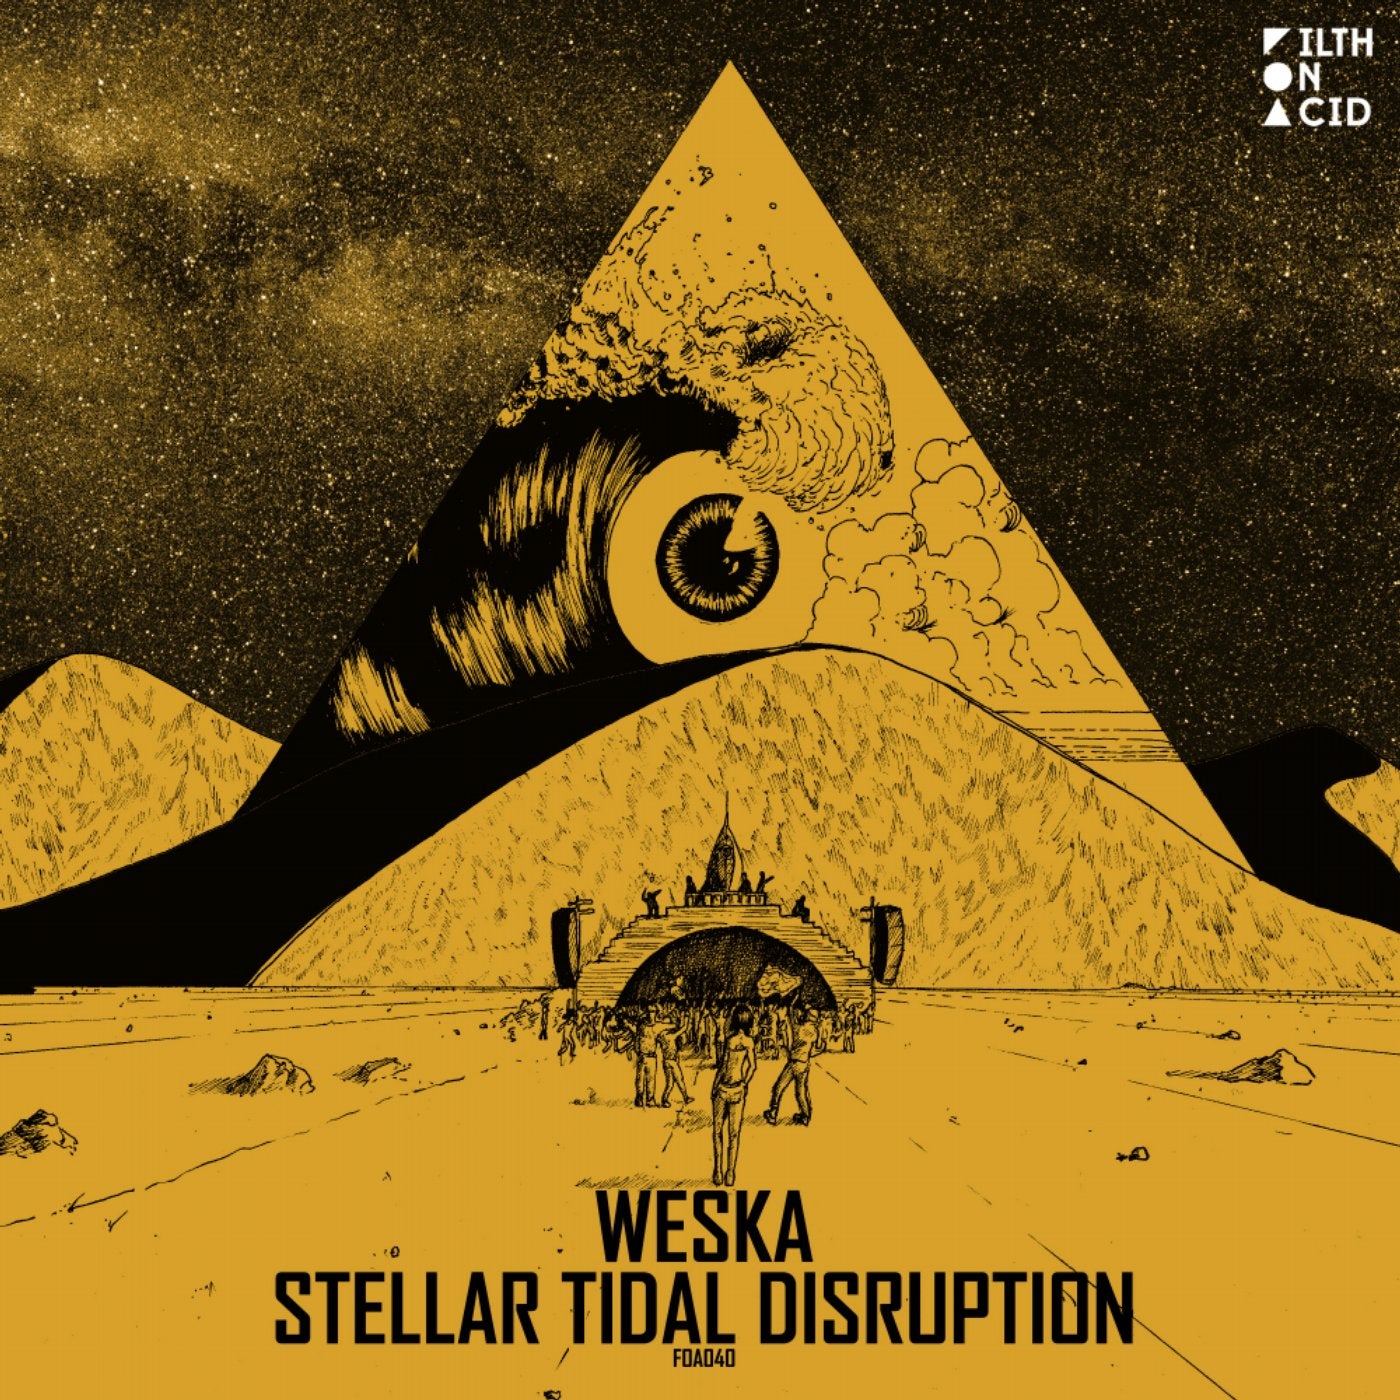 Stellar Tidal Disruption